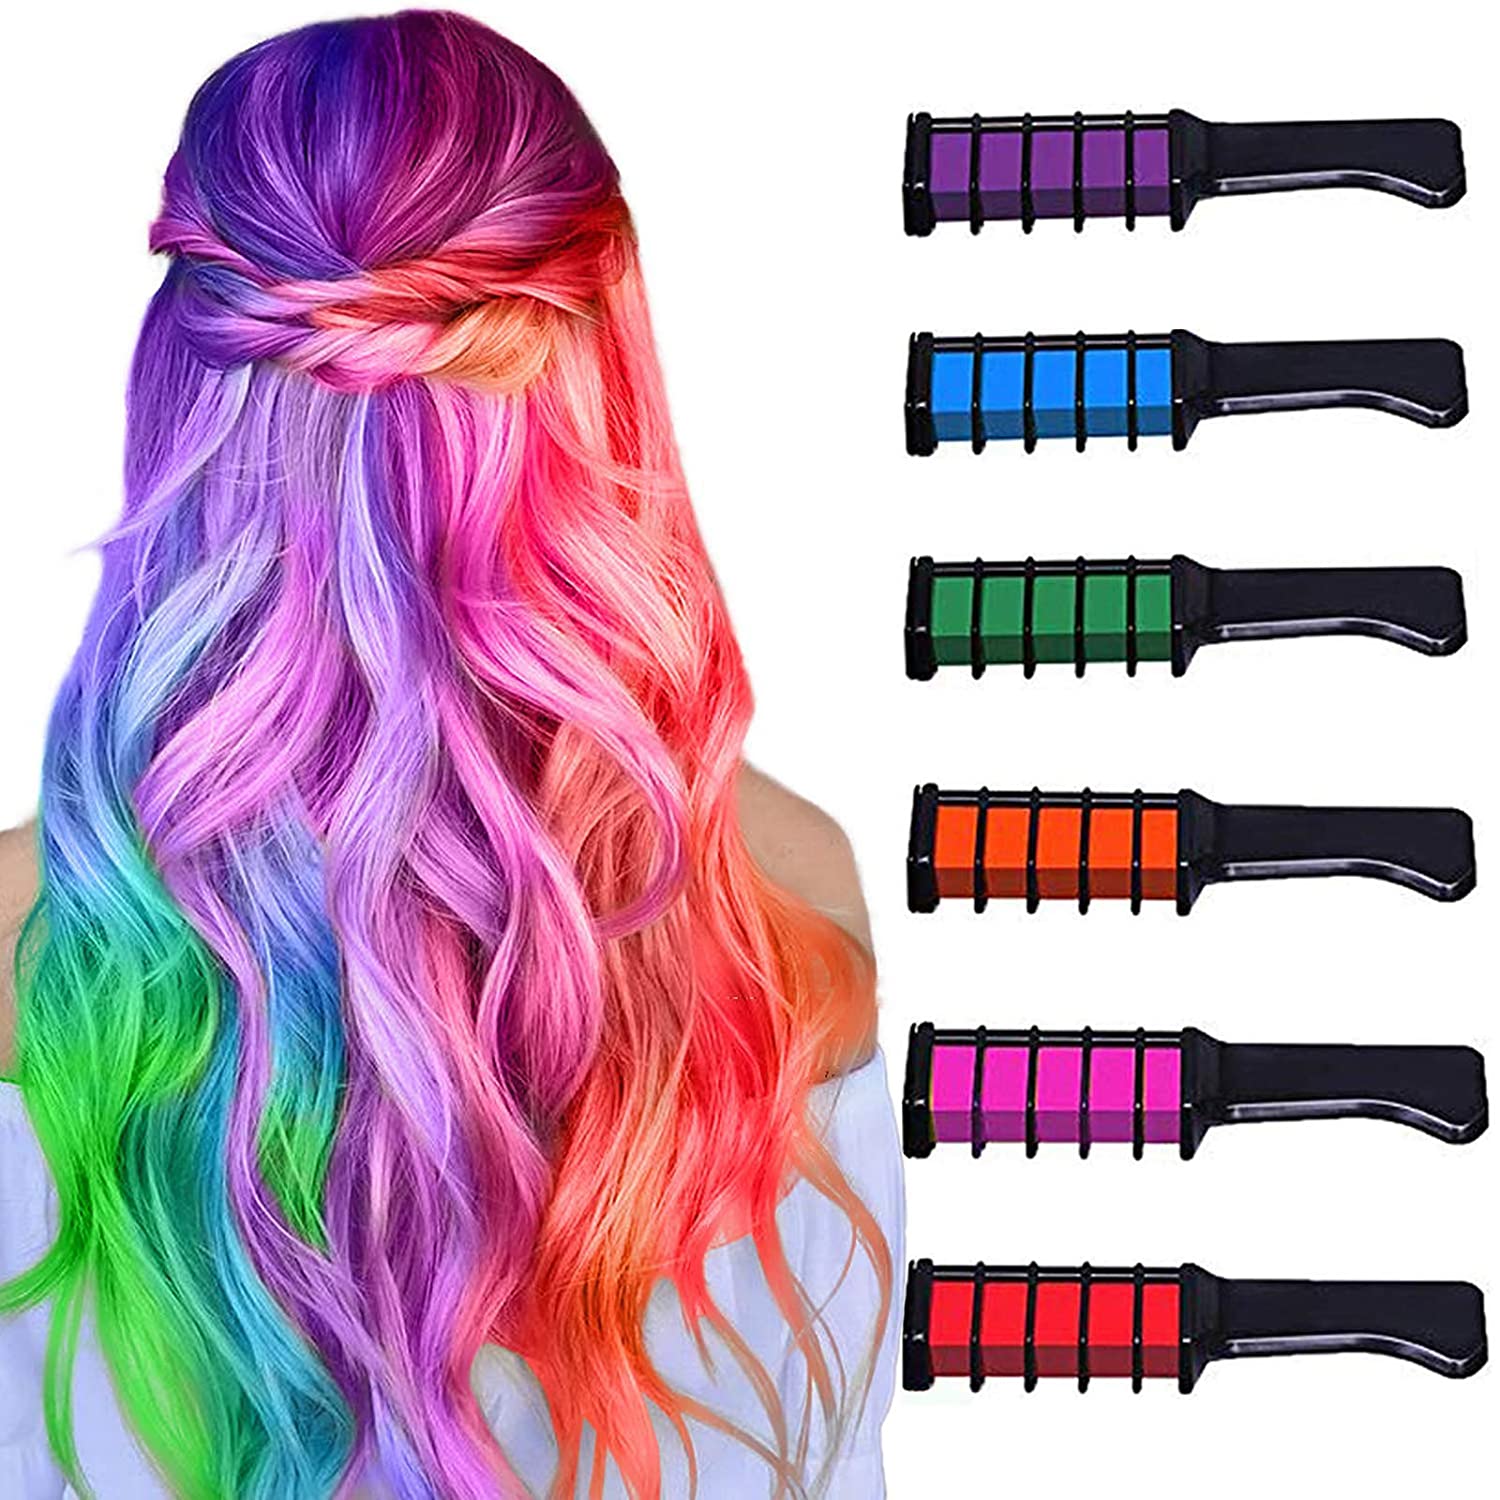 6 Farben Haarkreide Kamm, LauCentral Temporär Haarfarbe Kreide Kamm Auswaschbar mit Handschuhe und Schal für Geschenk DIY Cosplay